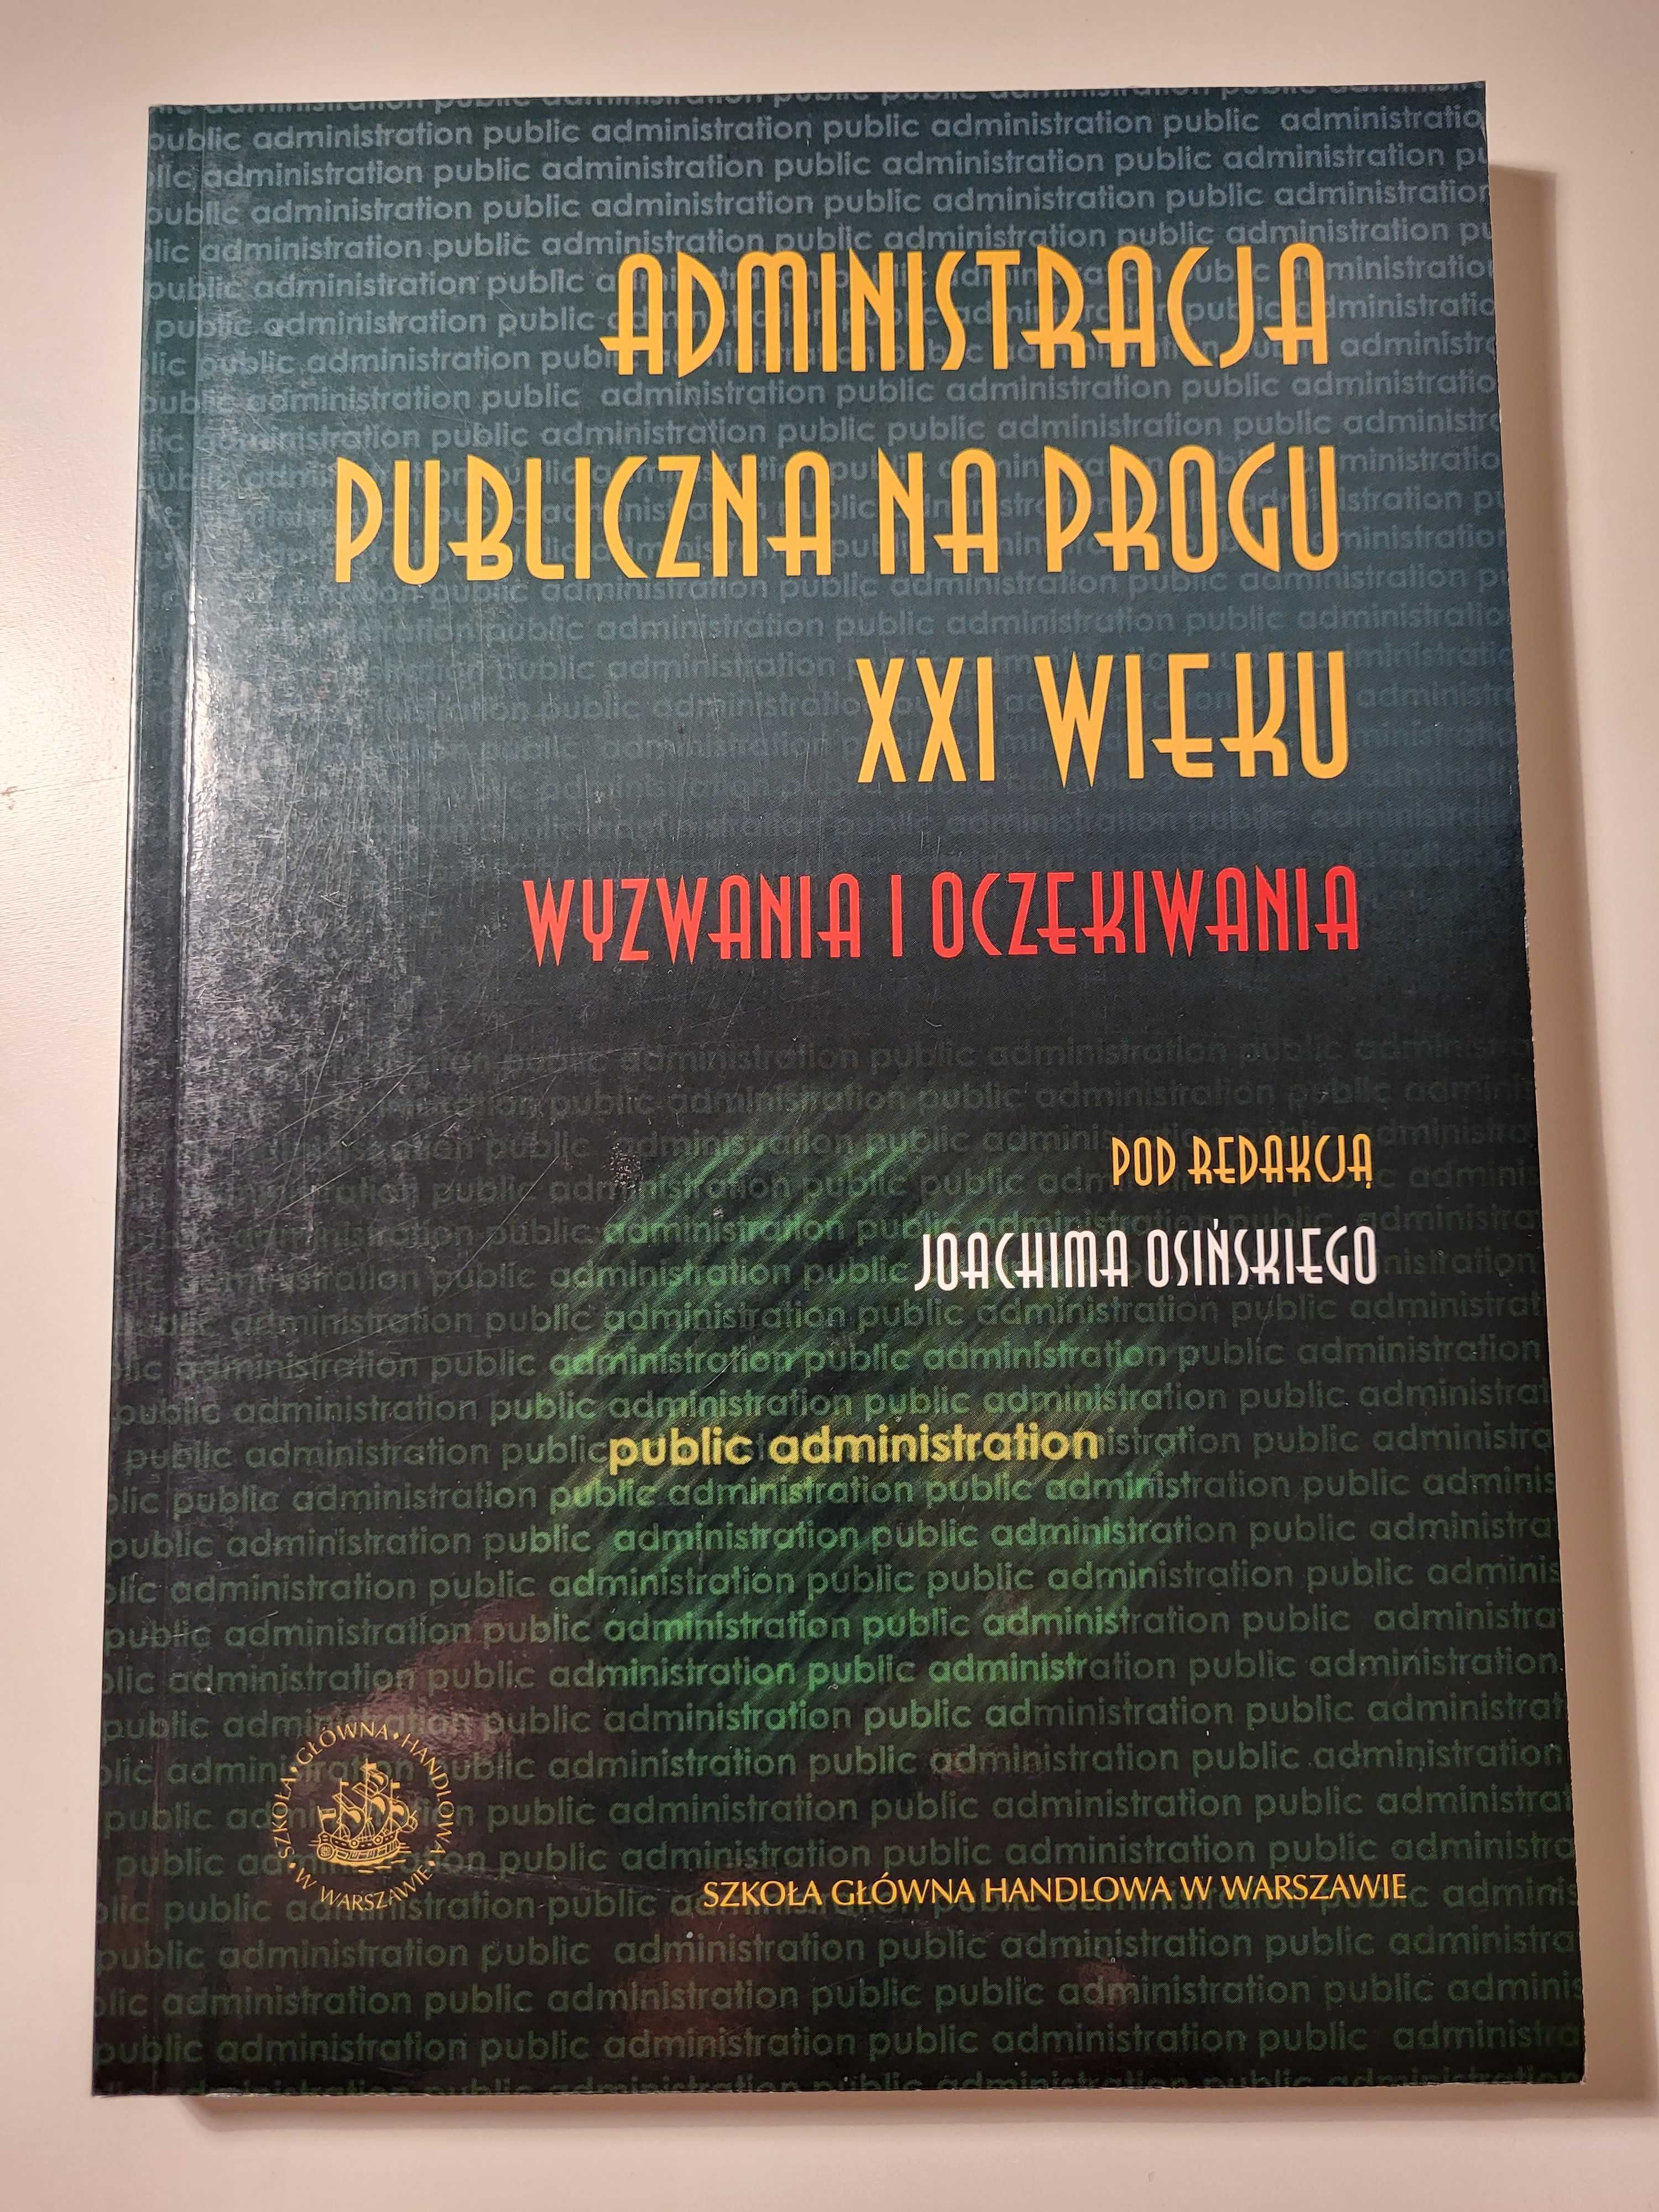 Podręcznik Administracja Publiczna na progu XXI wieku